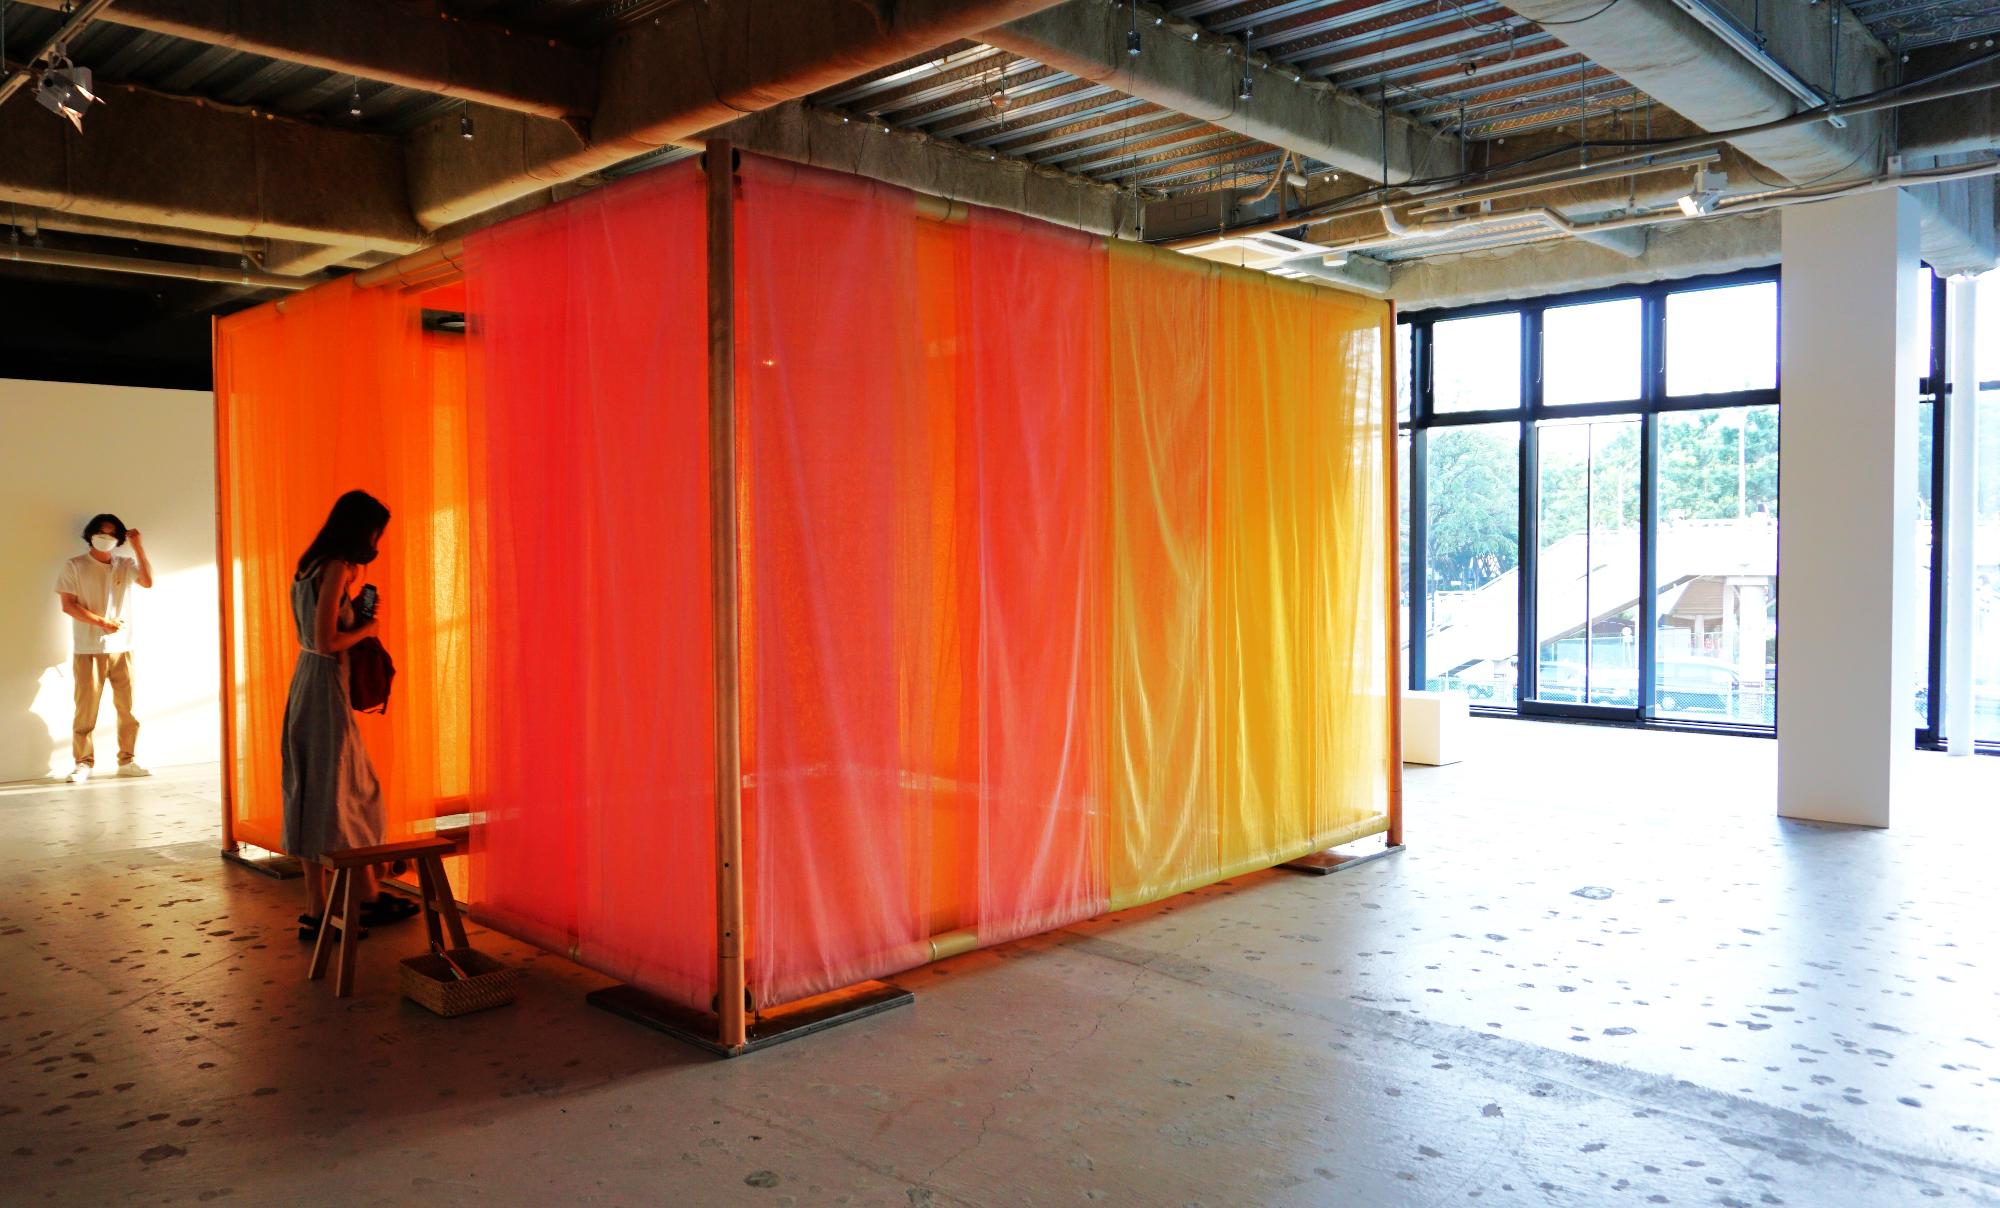 ウーヴ・クリコカラーの染め布に包まれた空間に入ると、差し込む太陽光によって移り変わる色彩の妙を体感できます。